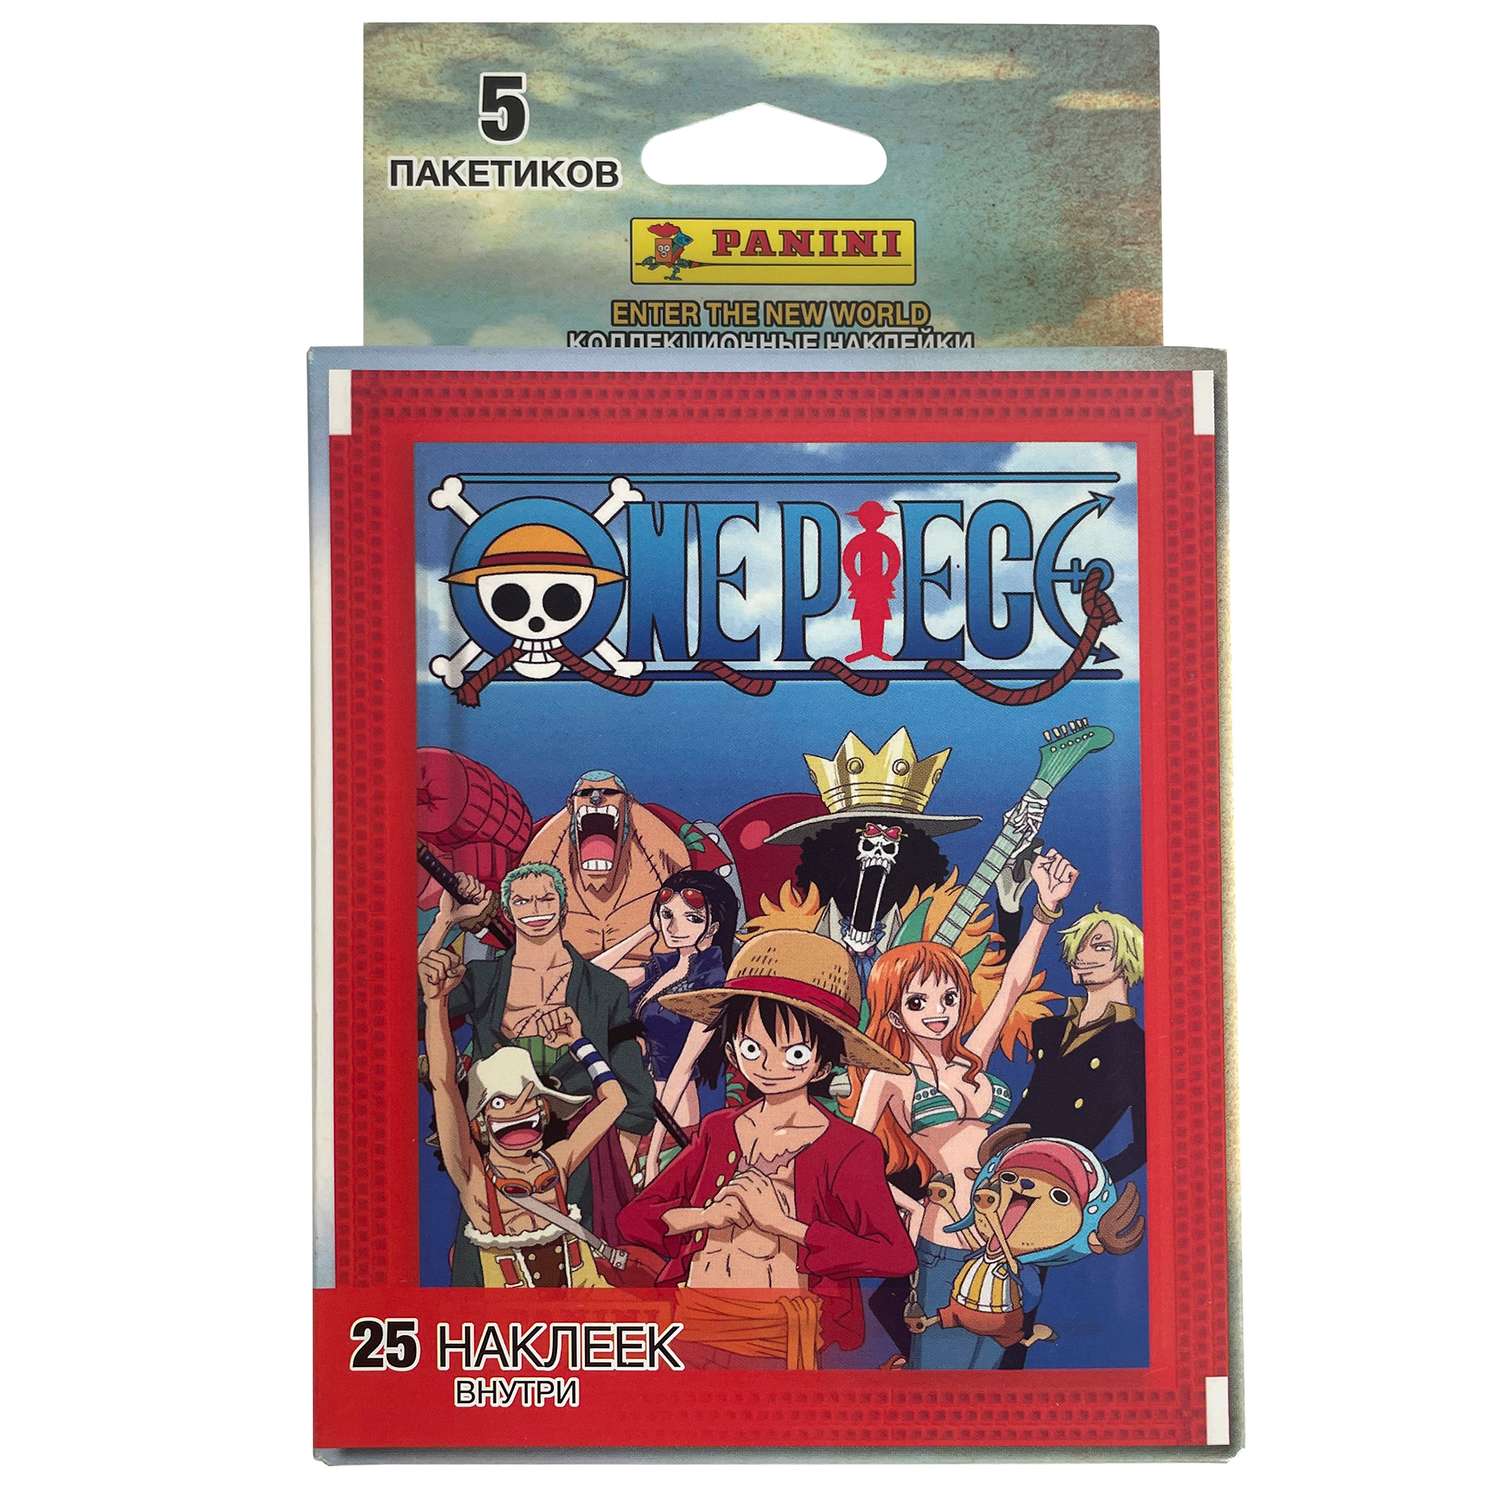 Набор коллекционных наклеек Panini One Piece 10 пакетиков в экоблистере - фото 2